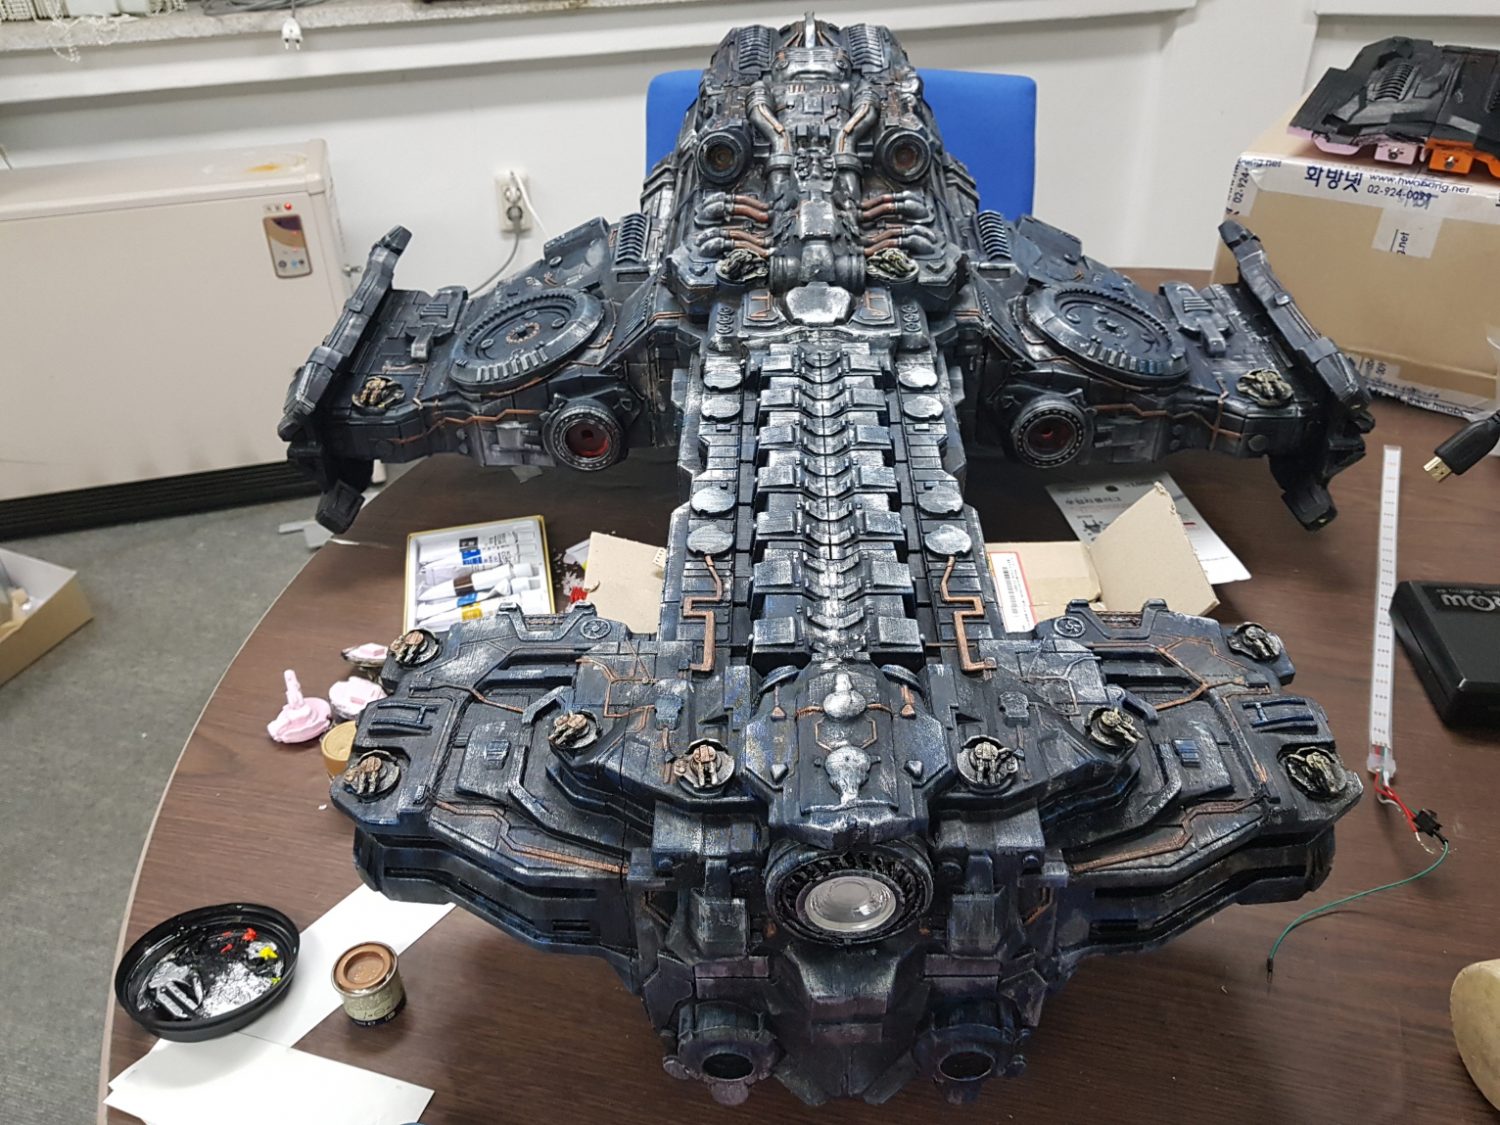 Meet the Maker of the 3D Printed Starcraft Battlecruiser - Gambody, 3D ...